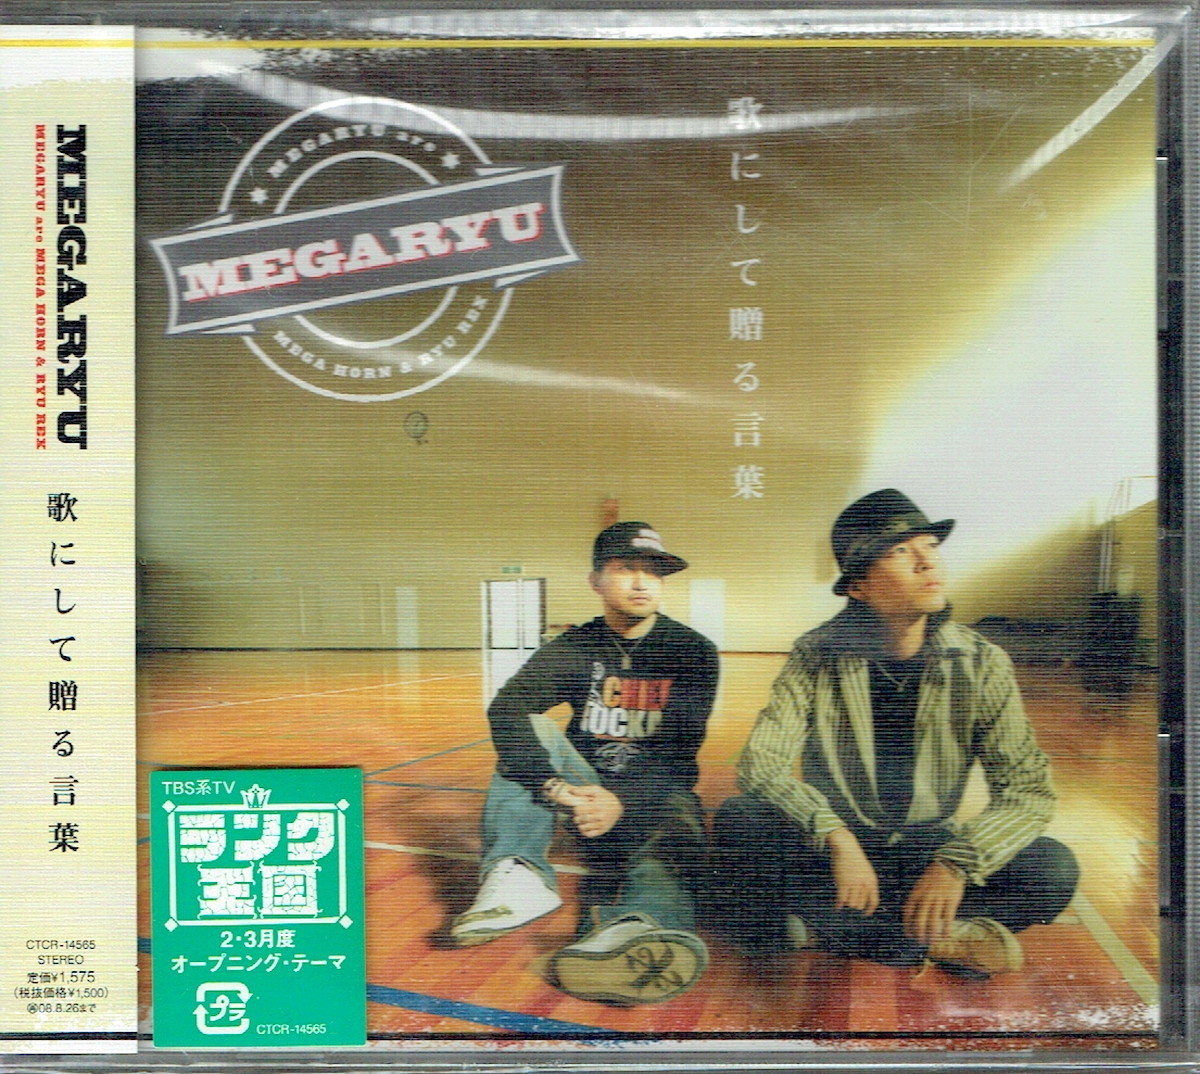 61_00209 新古CD 歌にして贈る言葉 MEGARYU J-POP 送料180円_画像1